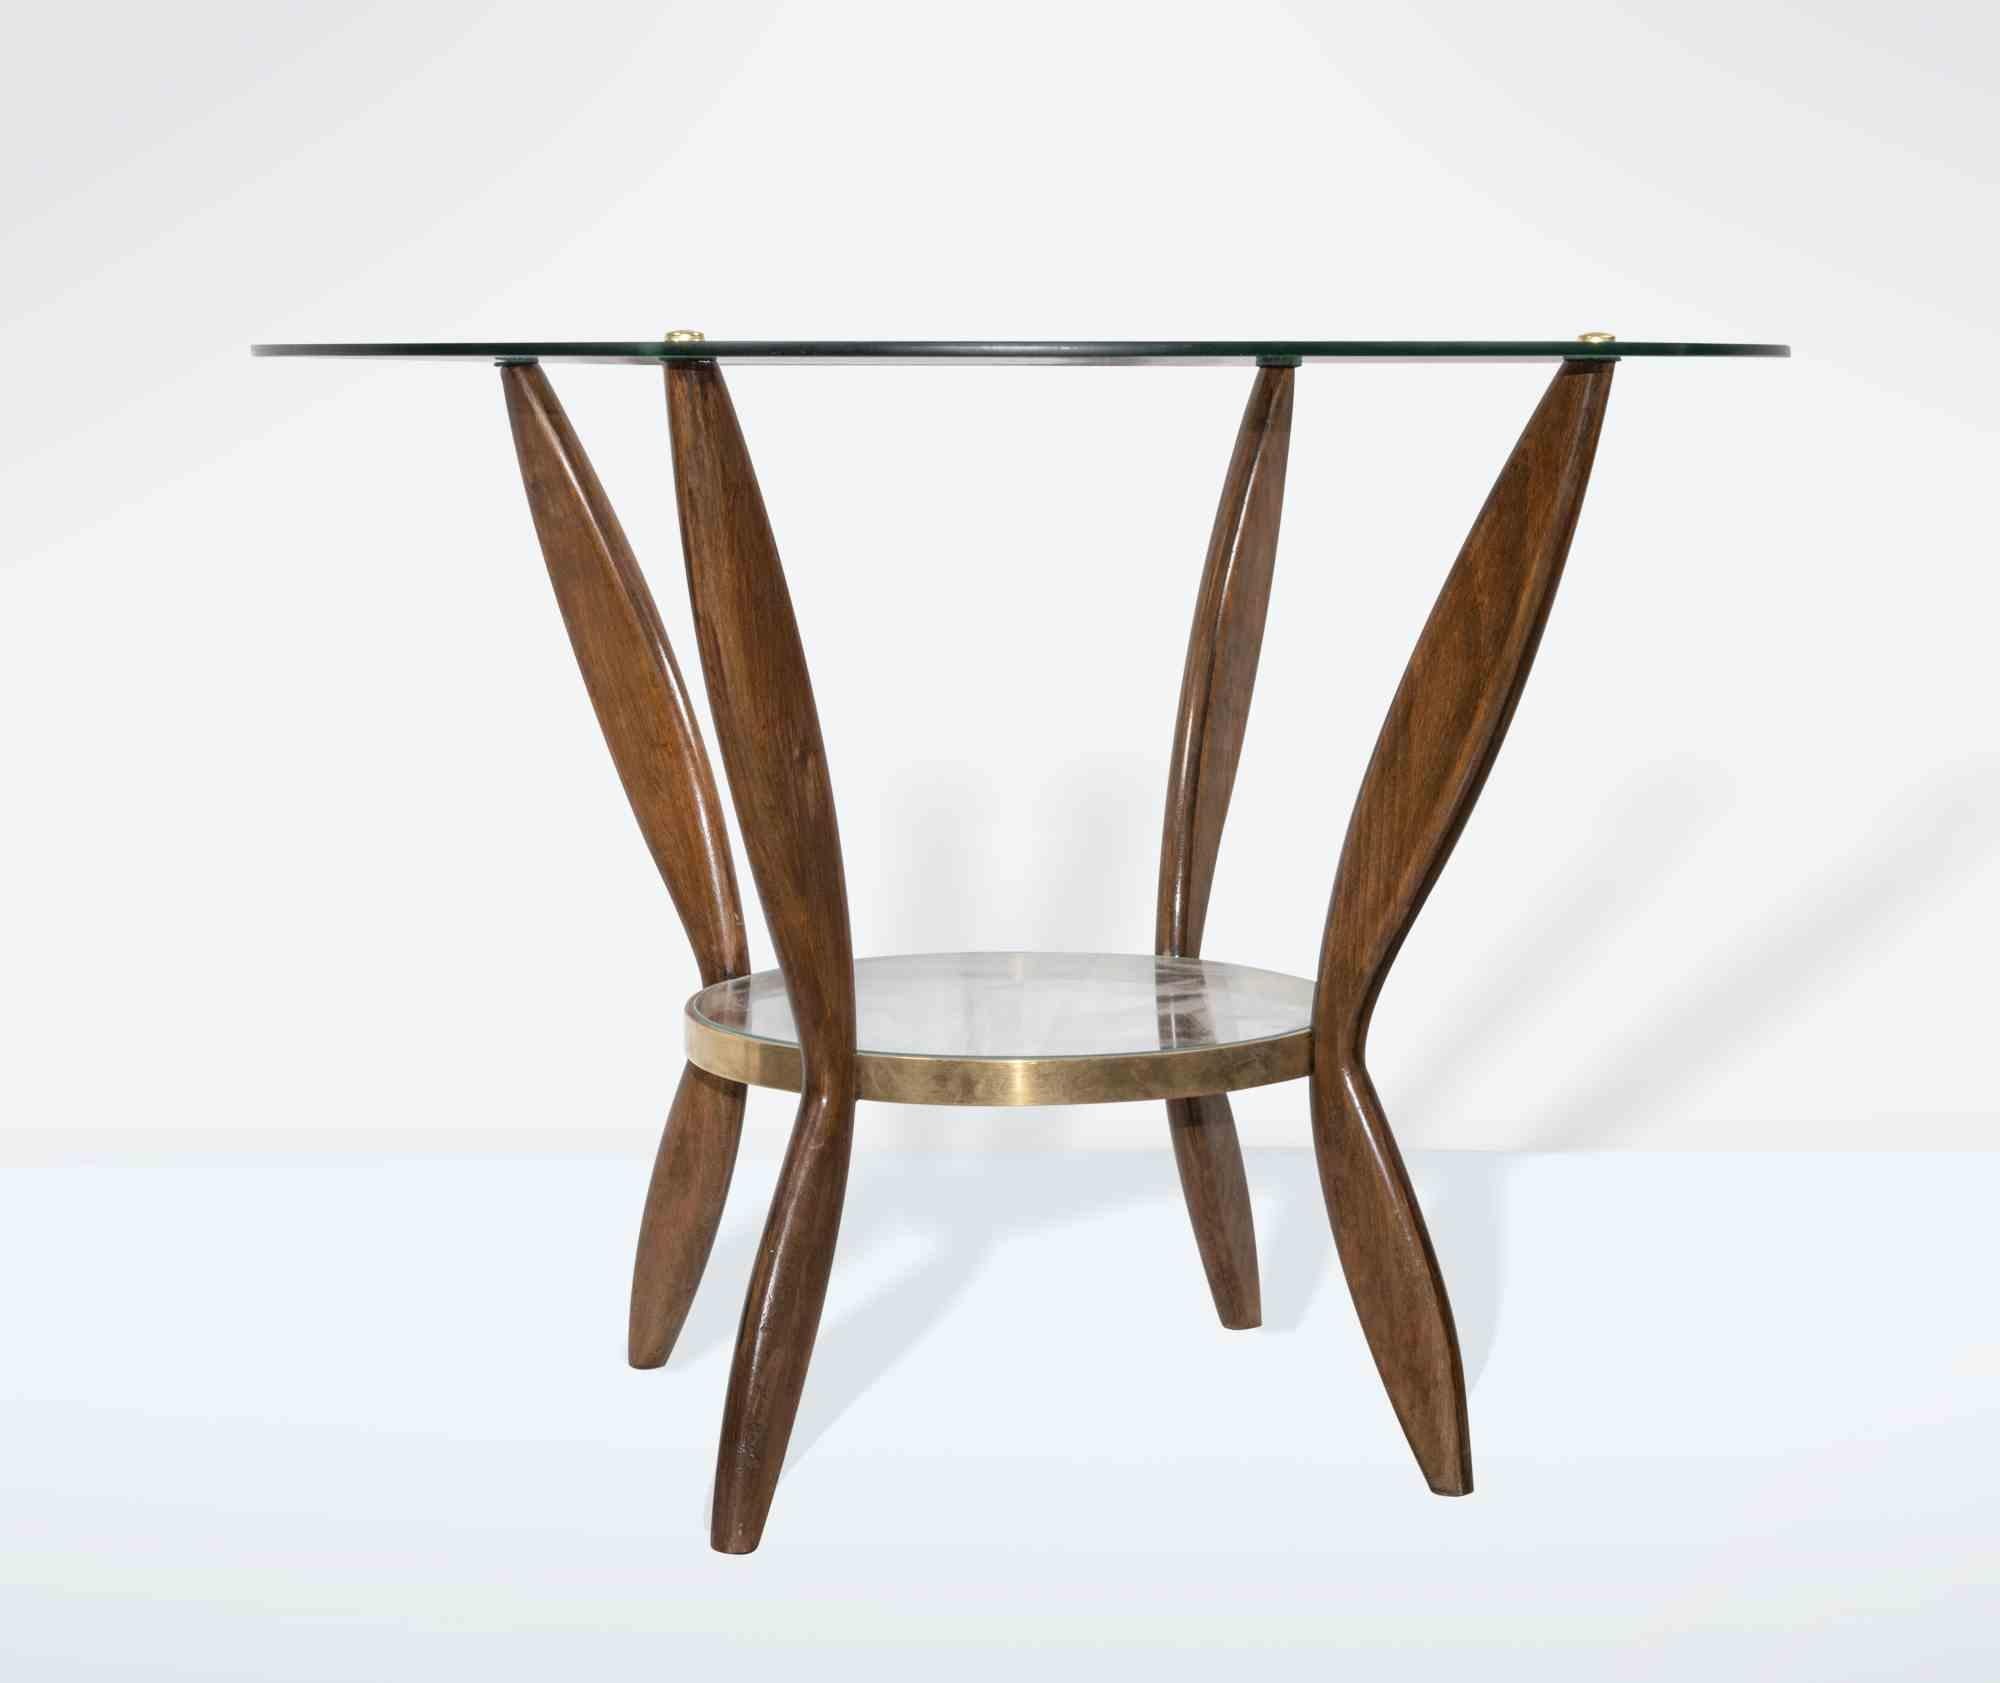 La paire de tables basses est un élément de mobilier design original réalisé par Gio Ponti dans les années 1950.

Belle paire de tables basses en bois avec dessus en verre et finitions en laiton. Bois de hêtre.

Gio Ponti (Milan 1891 - 1979) est